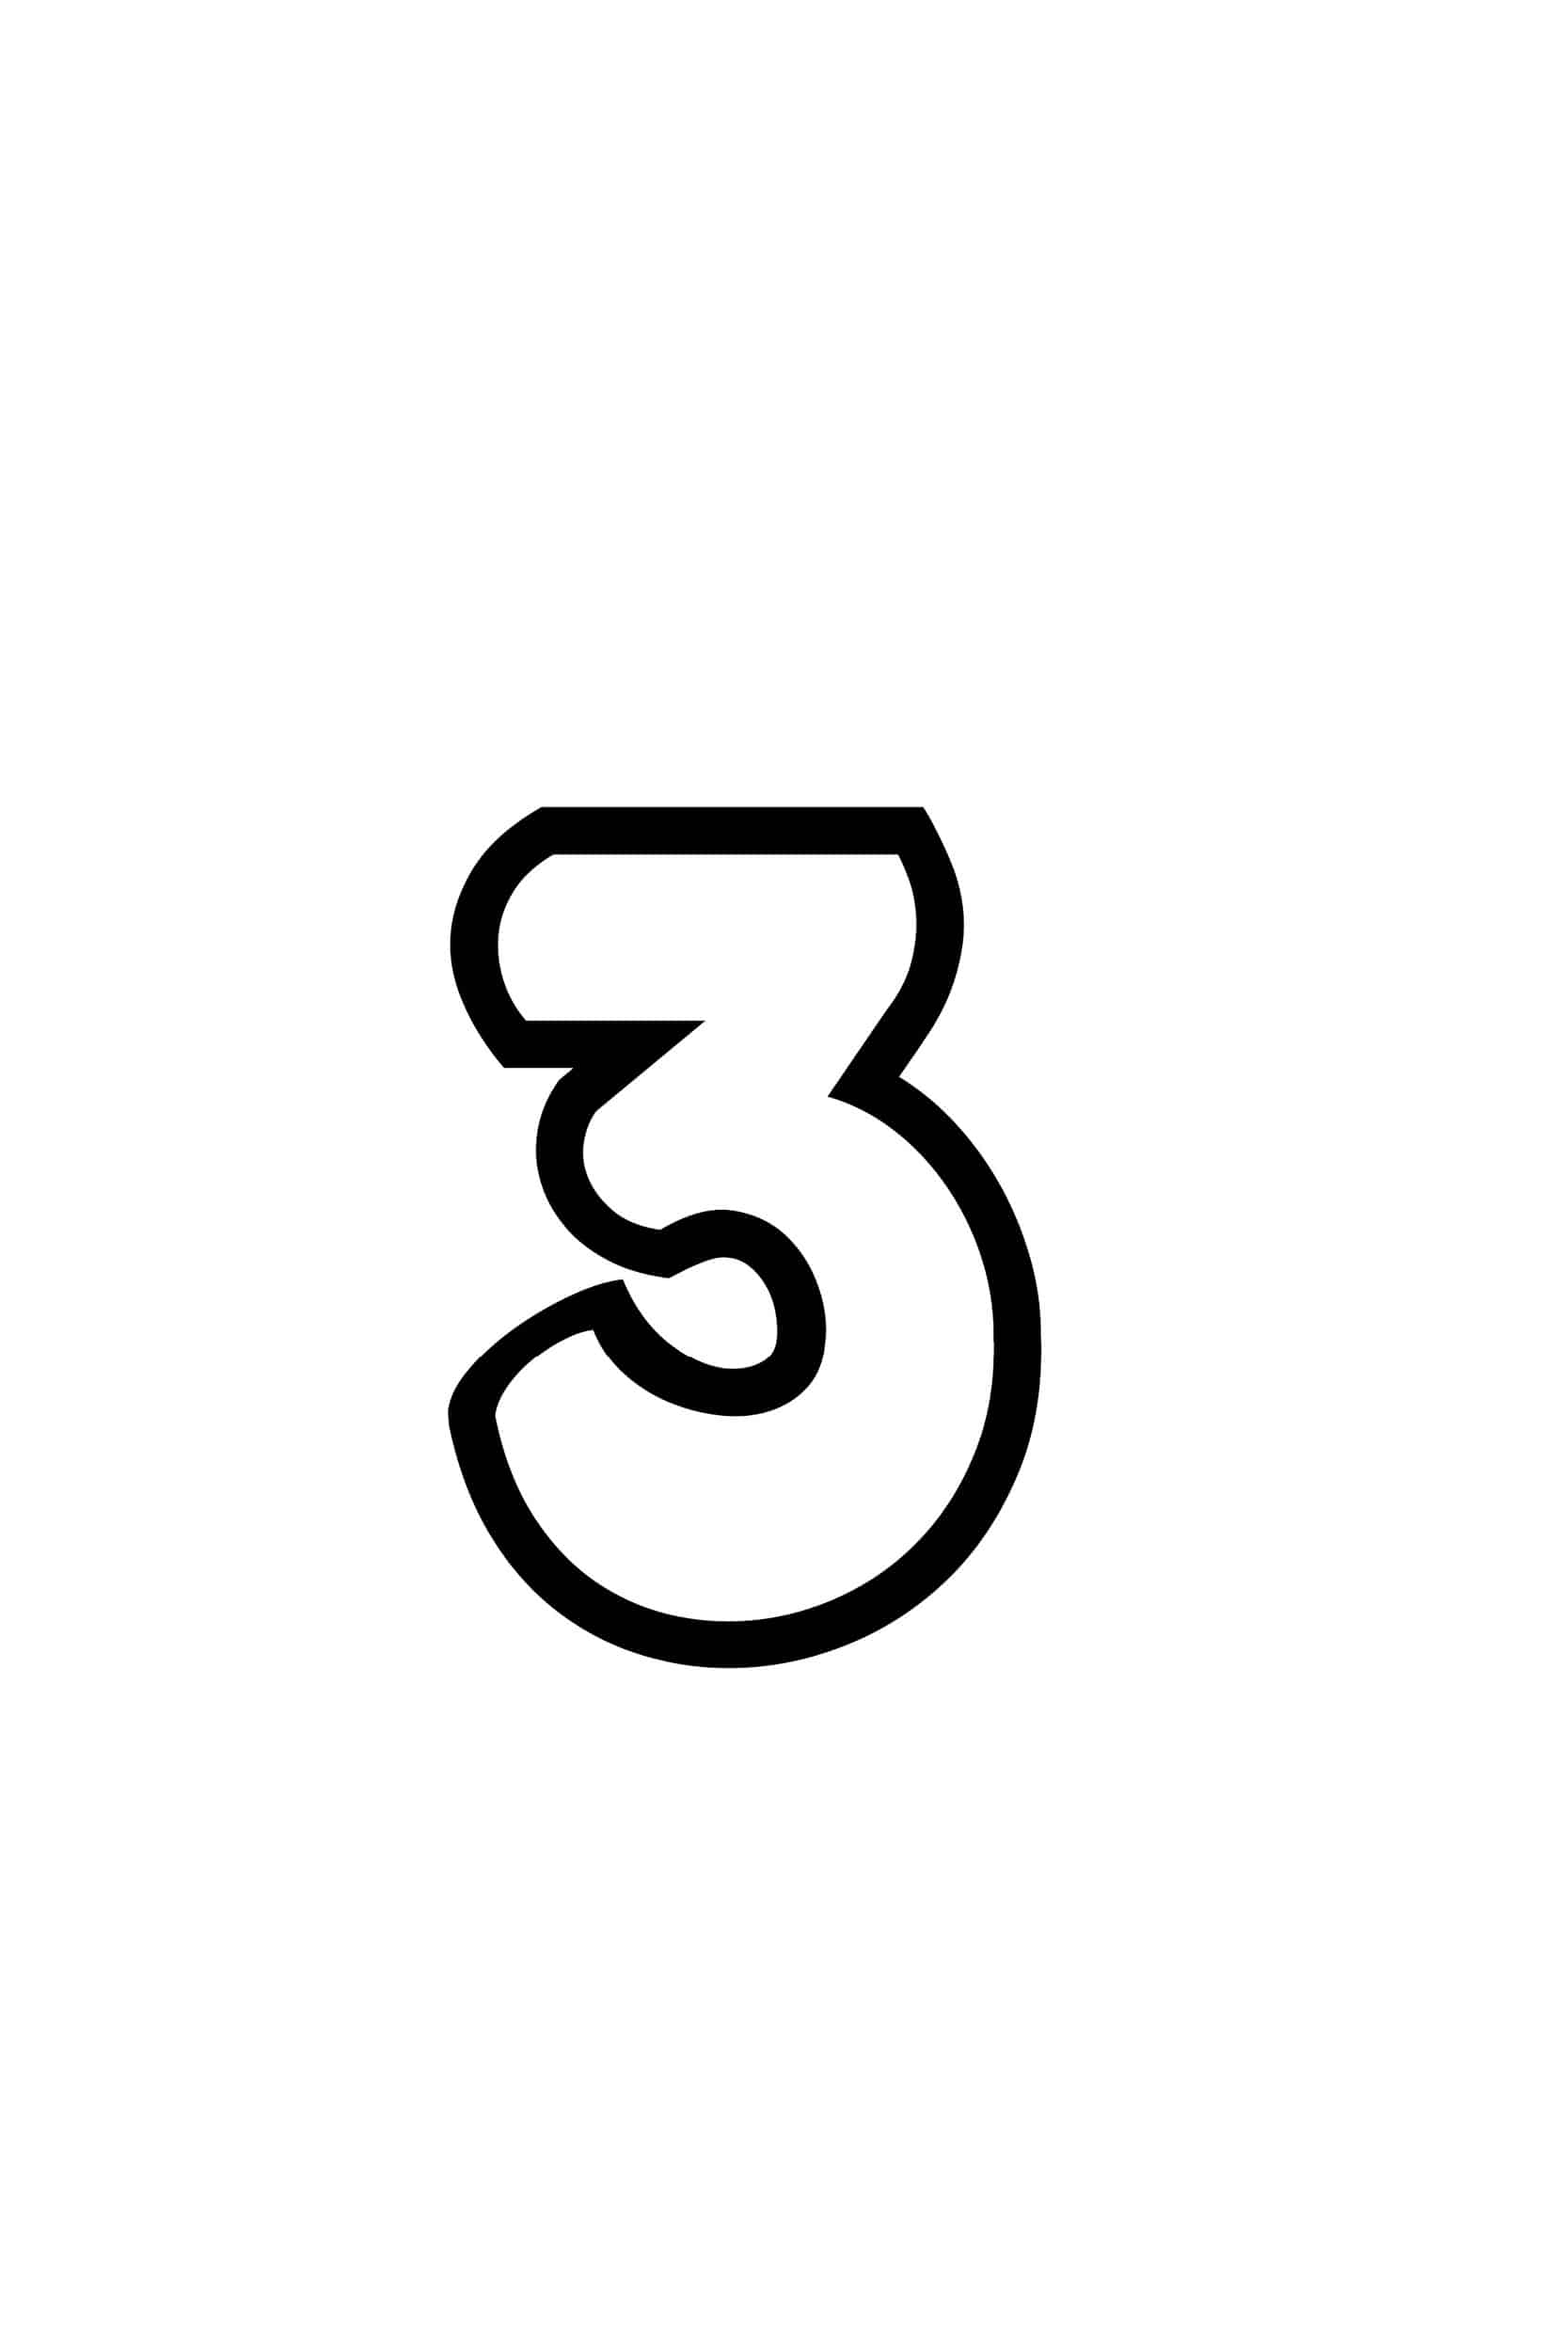 Free Printable Number Bubble Letters: Bubble Number 3 pour 3 Alphabet